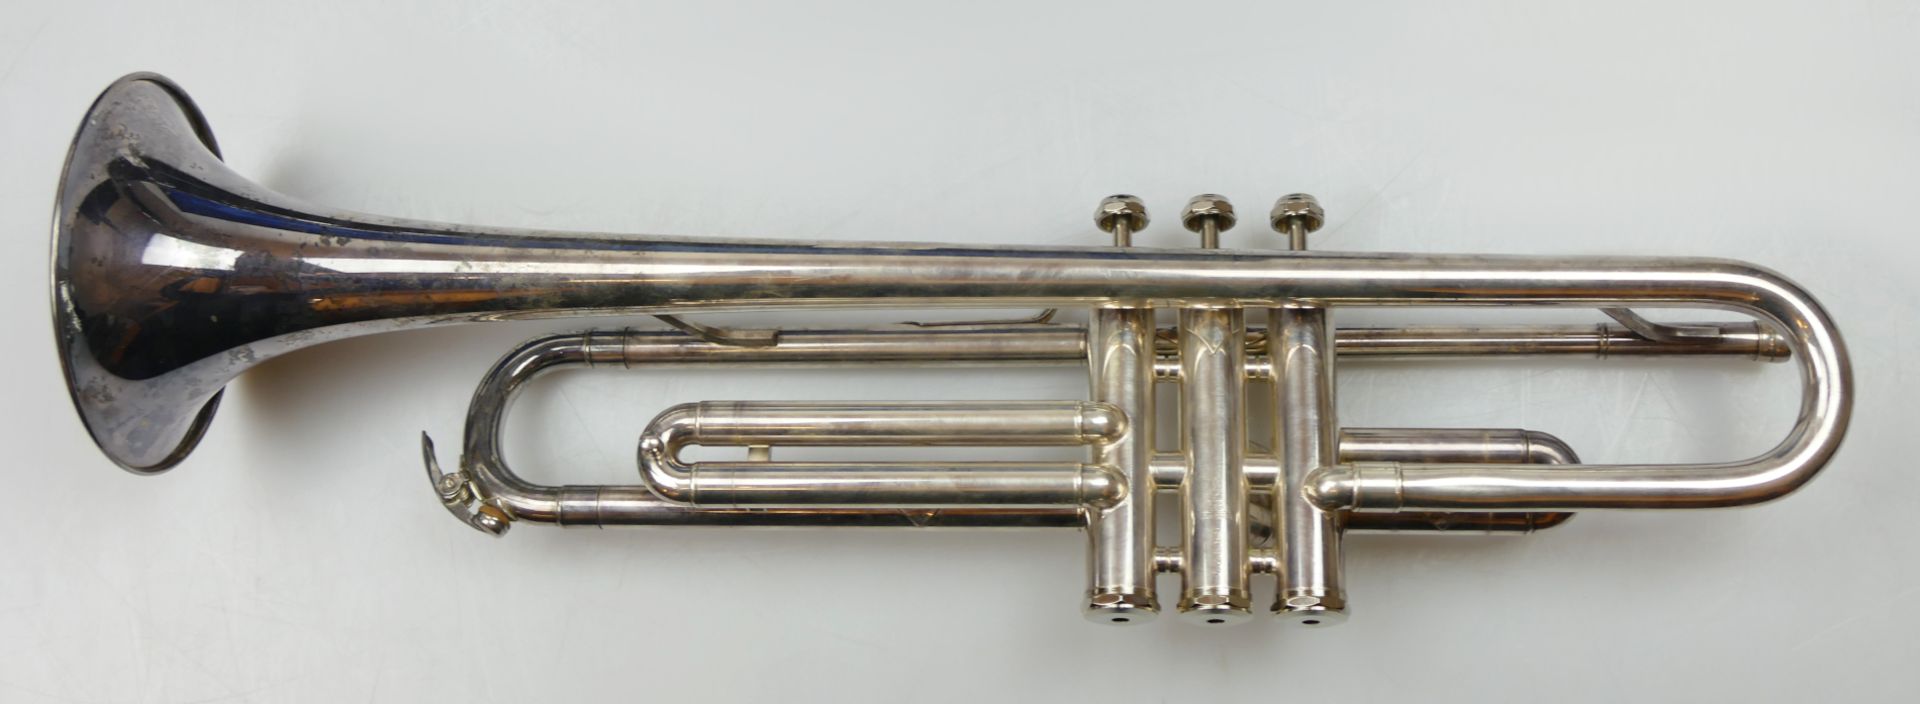 1 Trompete wohl versilbert 20. Jh. ca. L 49cm, mit Mundstück und Tragekoffer, u.a., z.T. ber., je As - Bild 2 aus 4